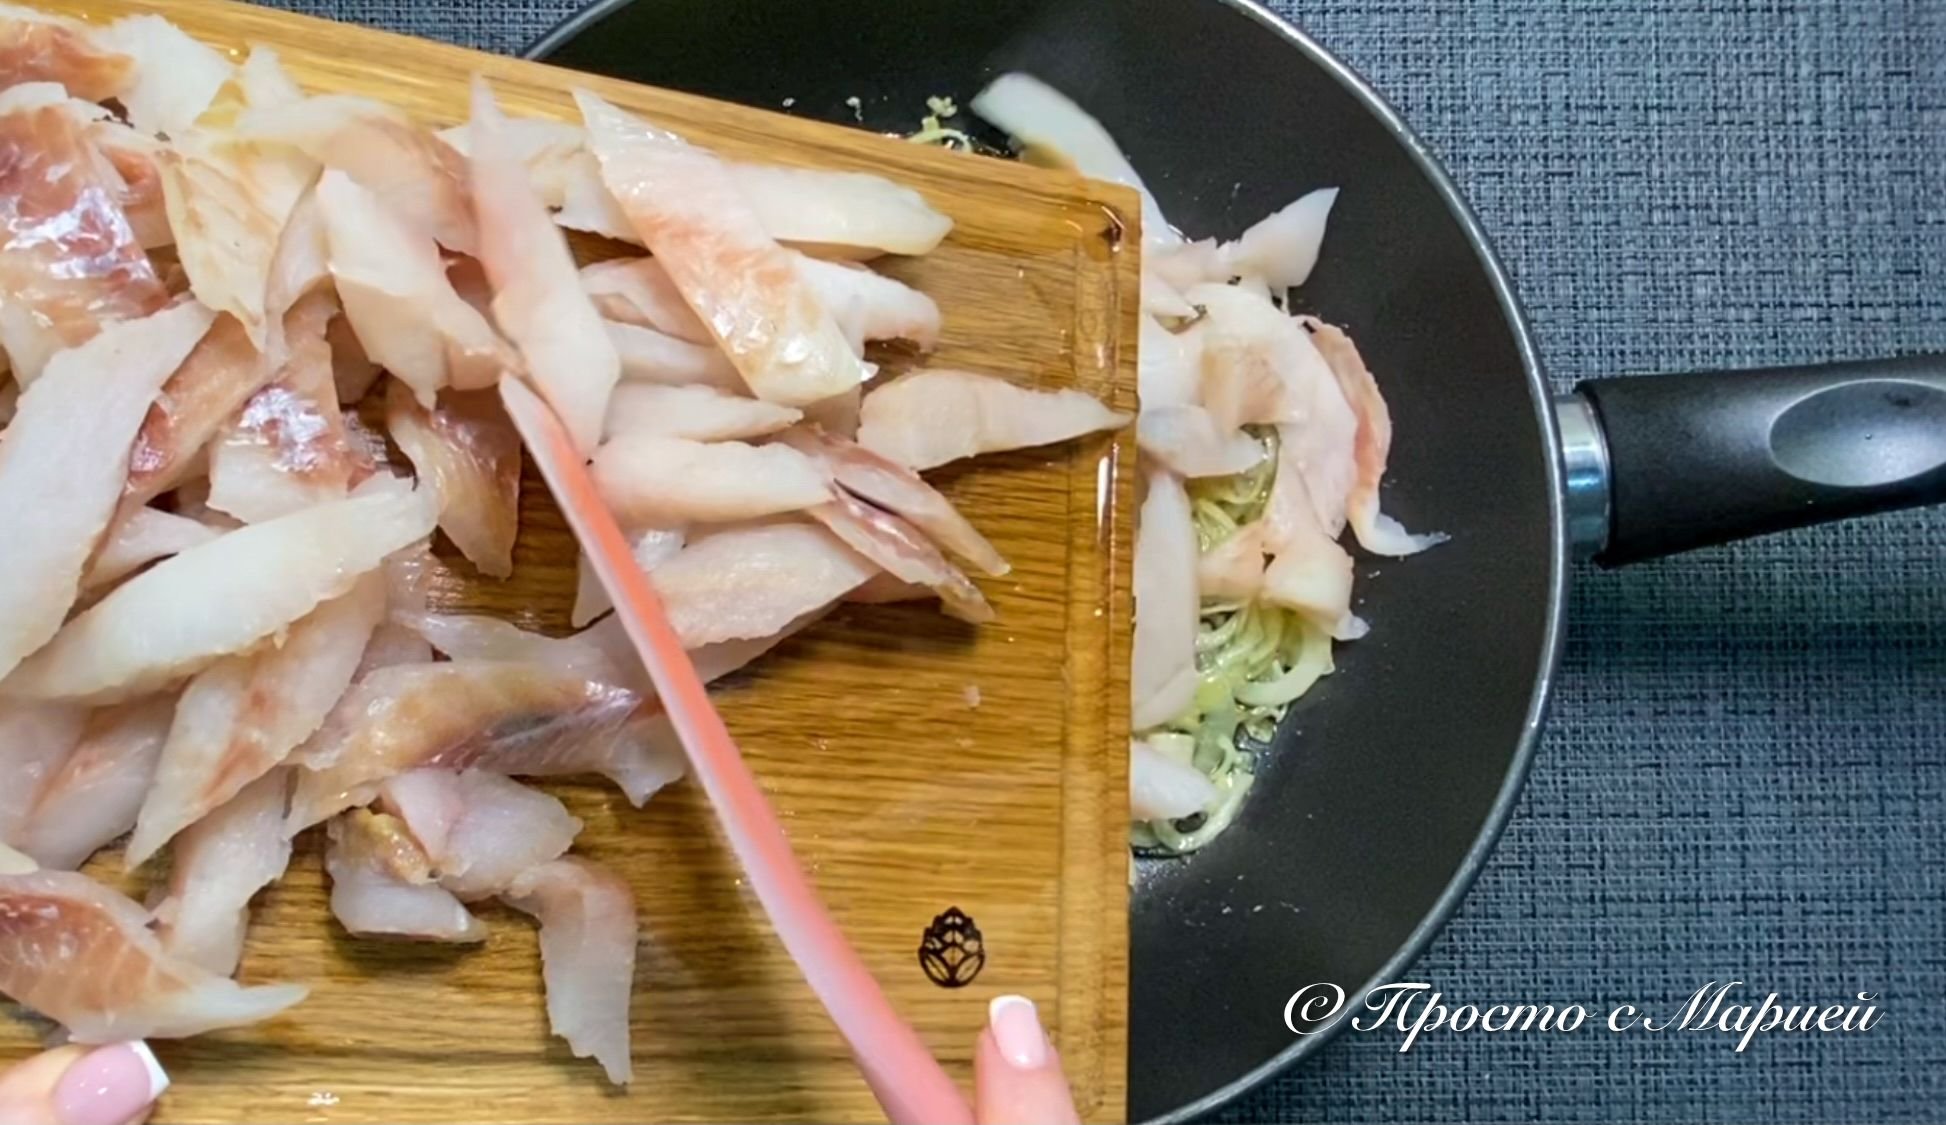 Минтай способы приготовления. Минтай на ужин. Приготовление минтая. Минтай в духовке самый вкусный с соевым соусом. Японская кухня минтай.